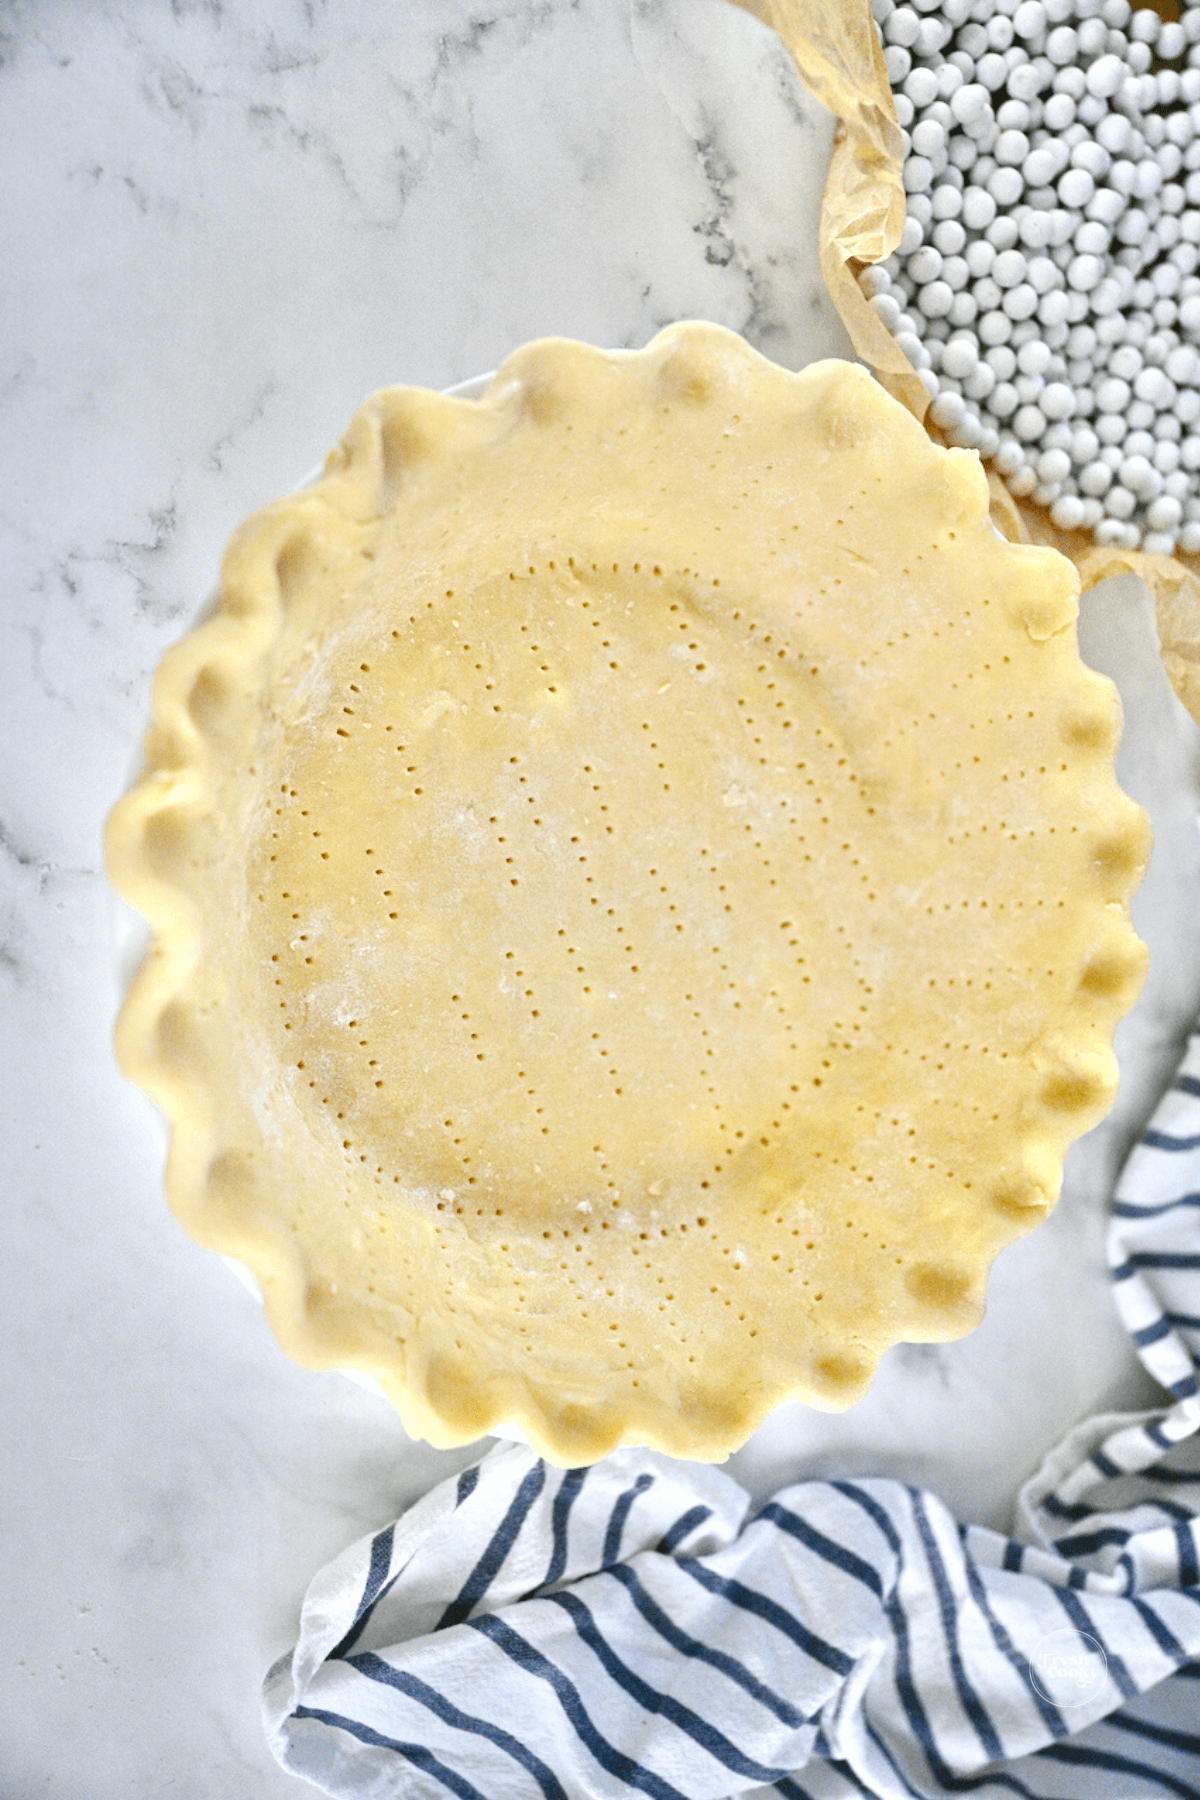 Crimped pie dough in pie plate.